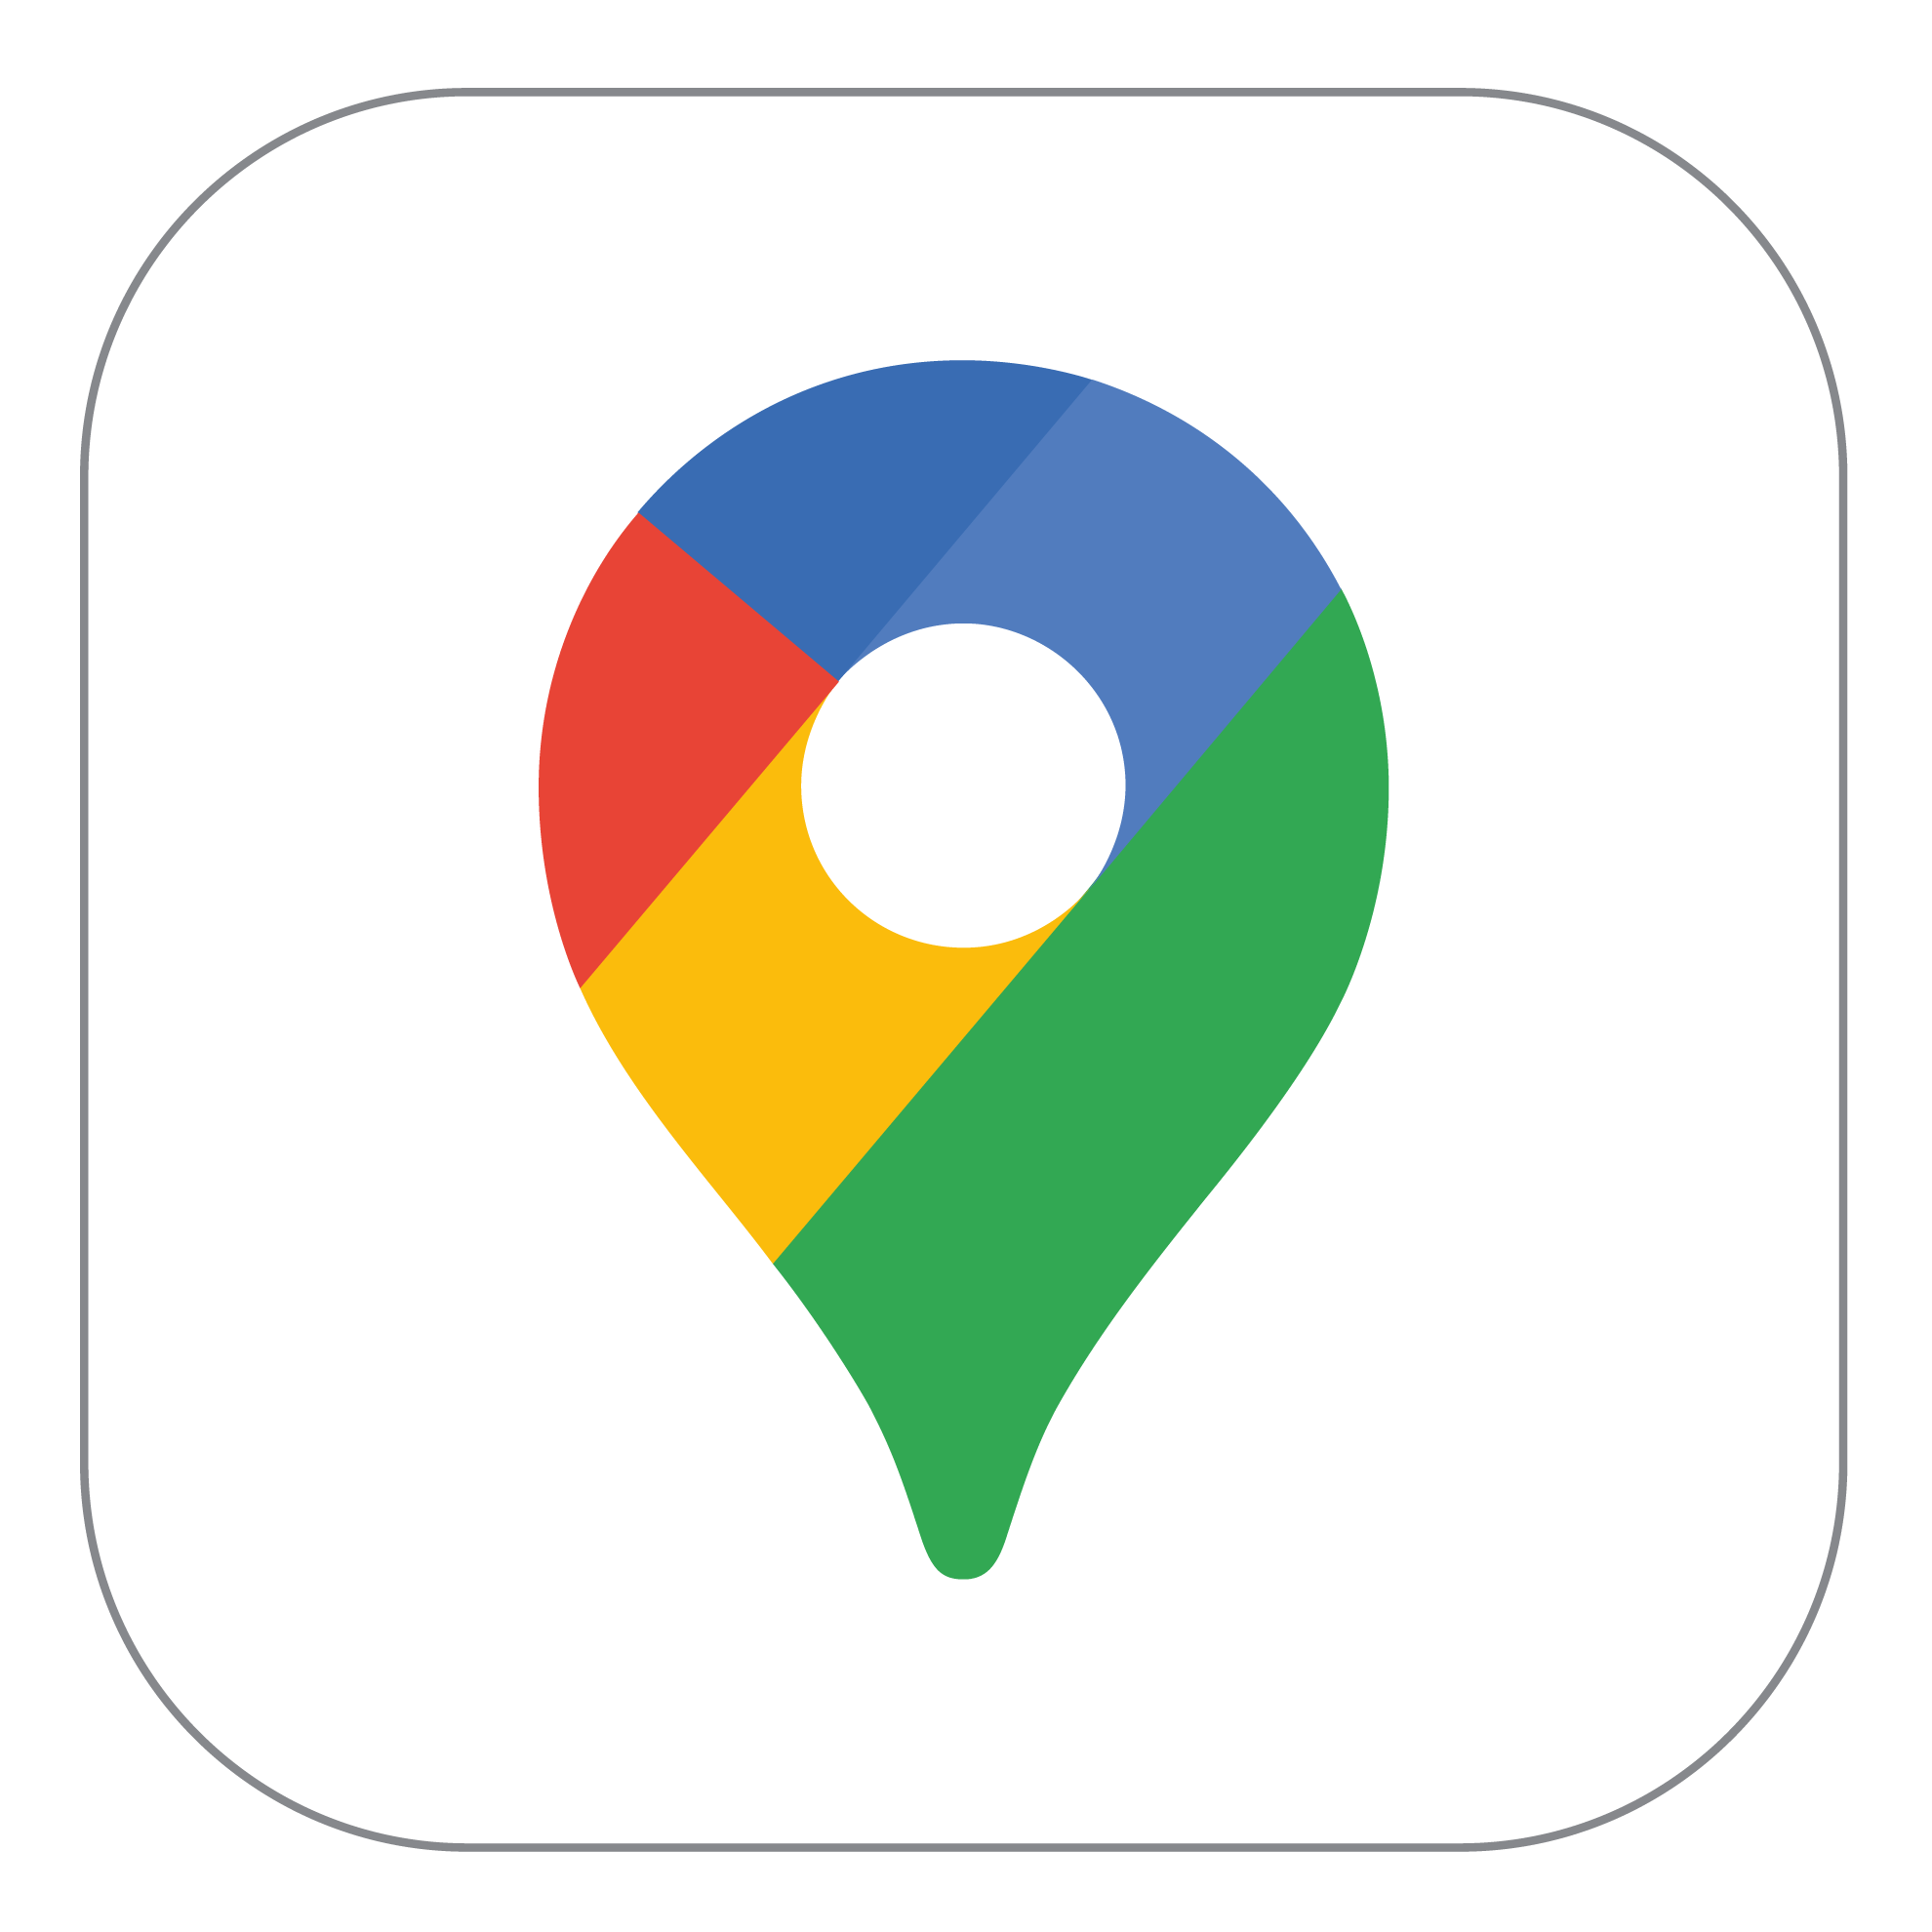 Logotipo Maps con tu recarga telefónica Movistar prepago ilimitado